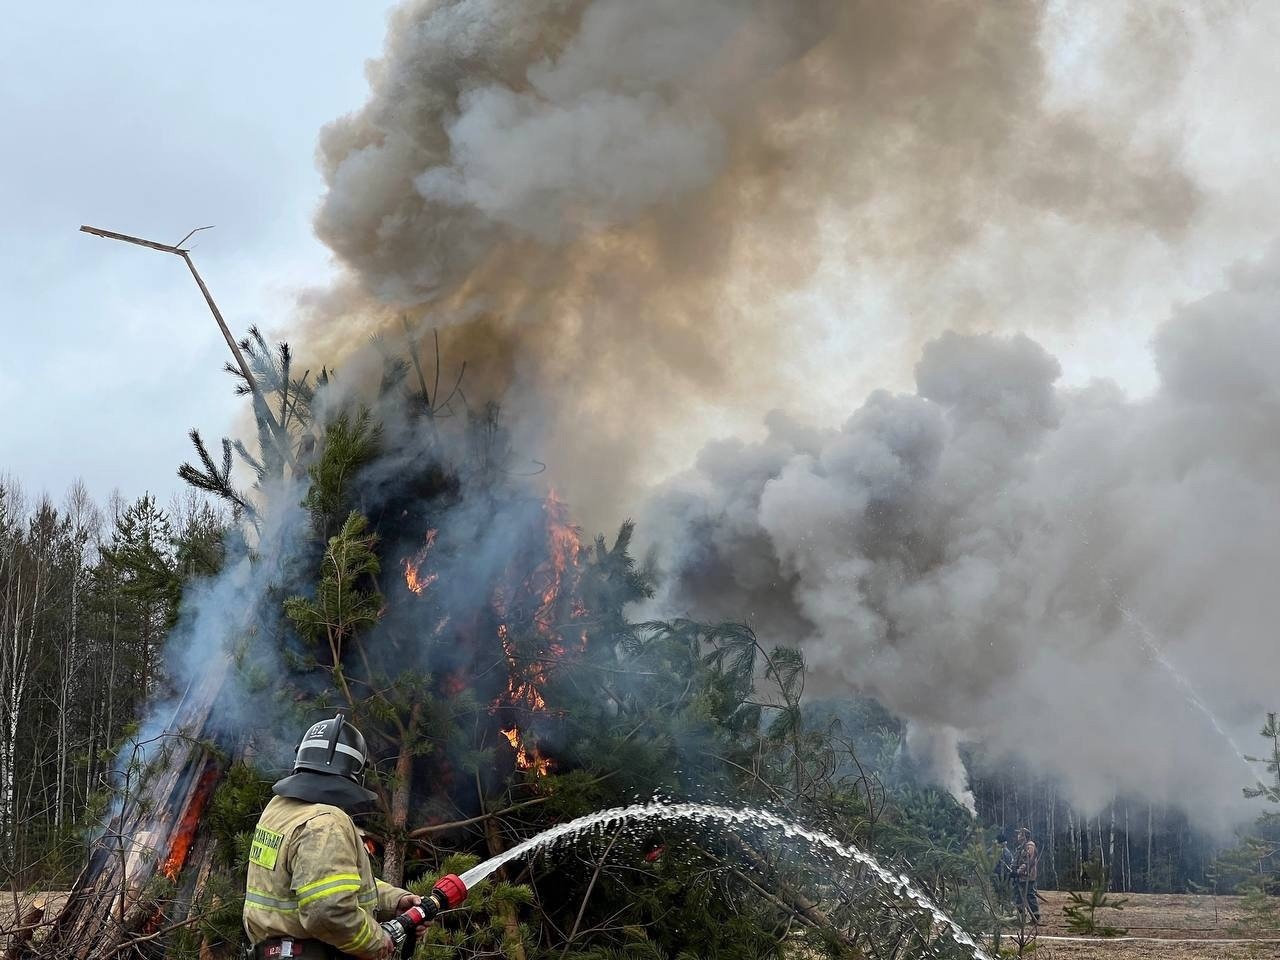 Лес снова горит: пожар произошел 7 мая в Кировской области